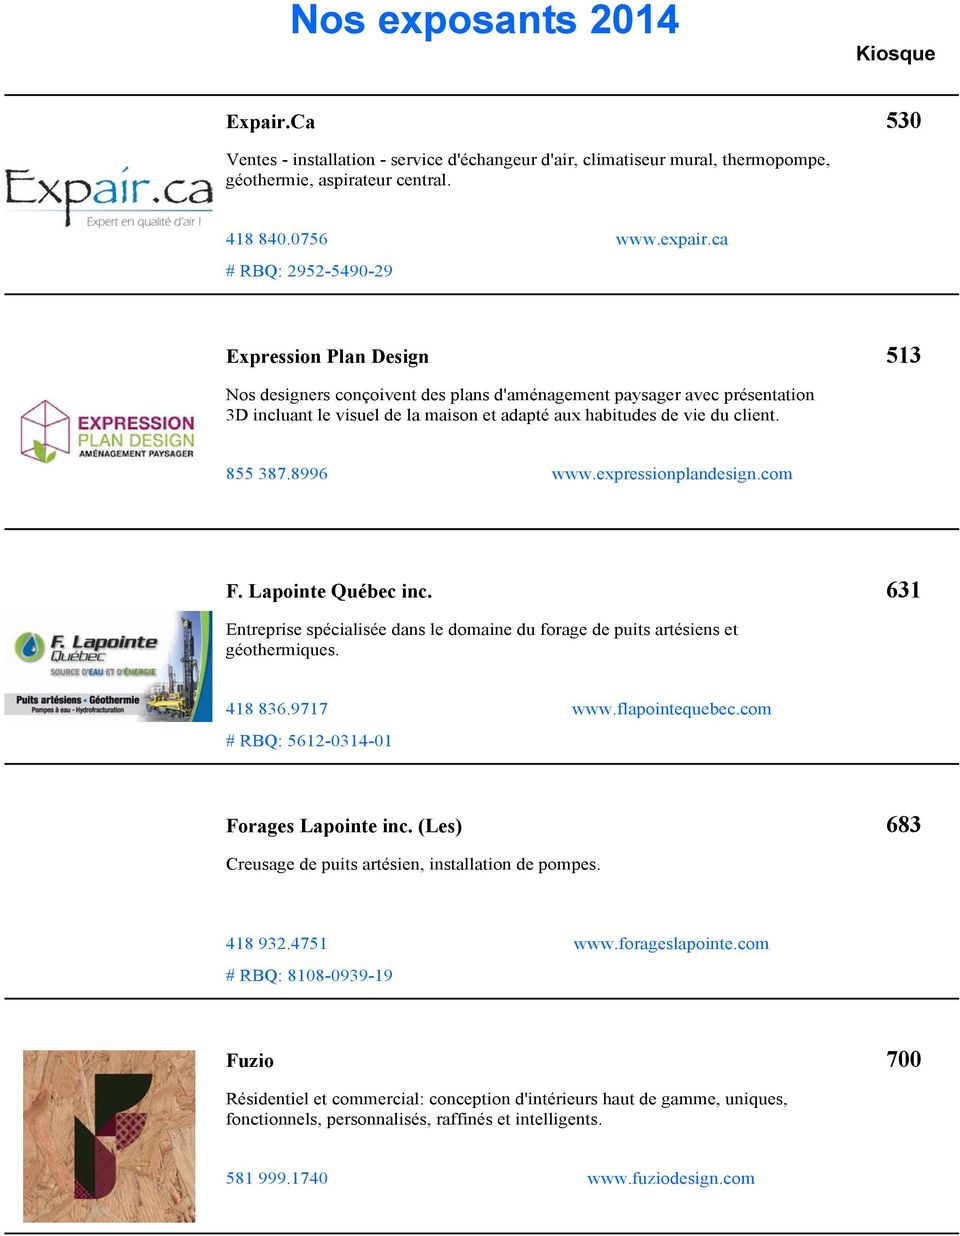 expressionplandesign.com F. Lapointe Québec inc. 631 Entreprise spécialisée dans le domaine du forage de puits artésiens et géothermiques. 418 836.9717 # RBQ: 5612-0314-01 www.flapointequebec.